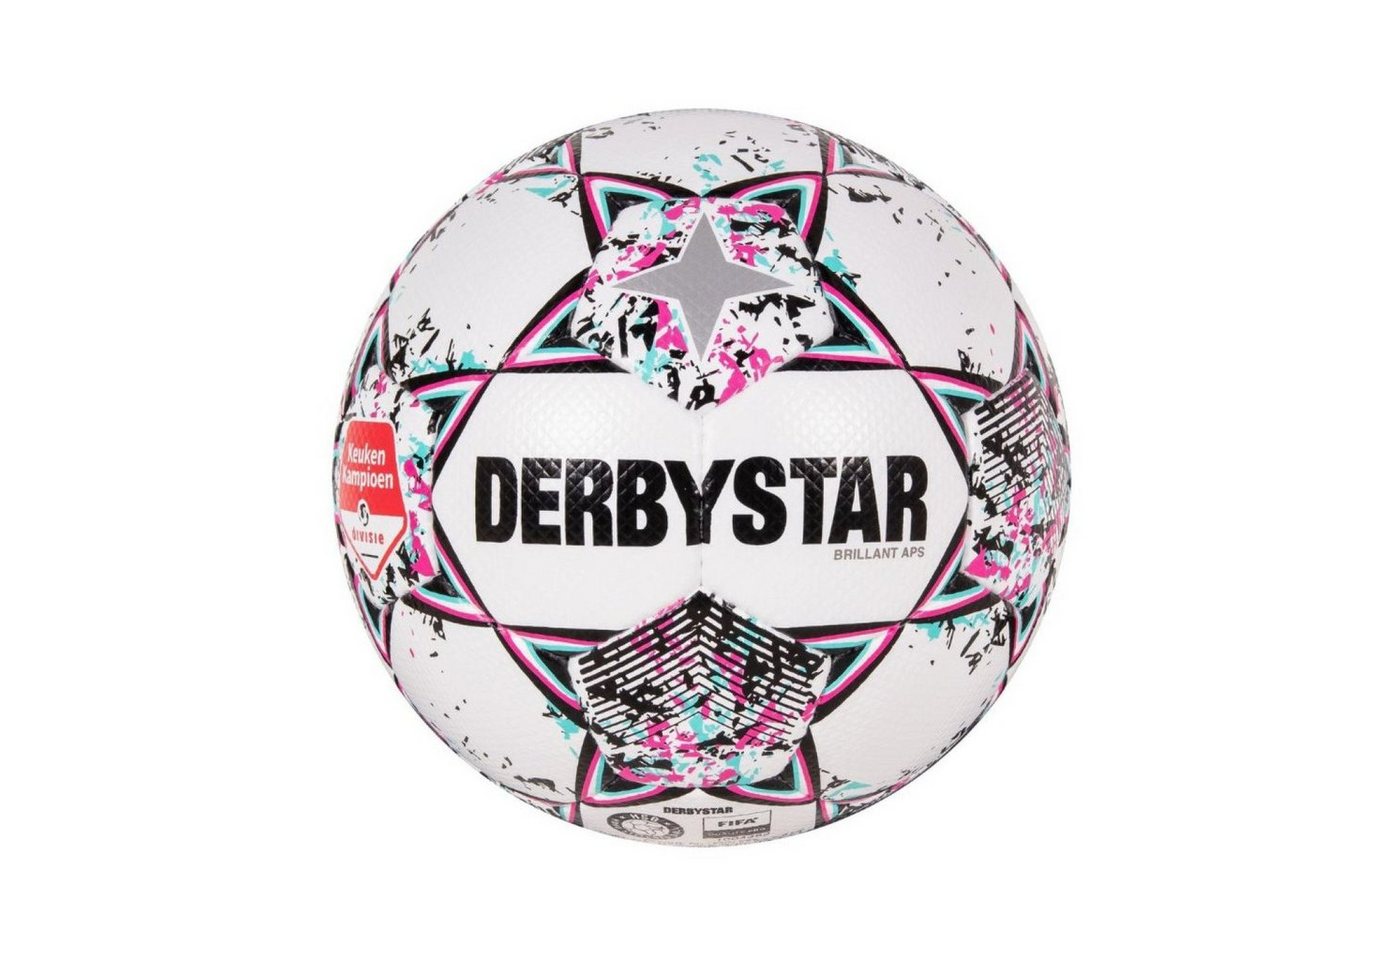 Derbystar Fußball Brillant APS KEUKEN (holländische Erendivise) - Spielball / Matchball von Derbystar